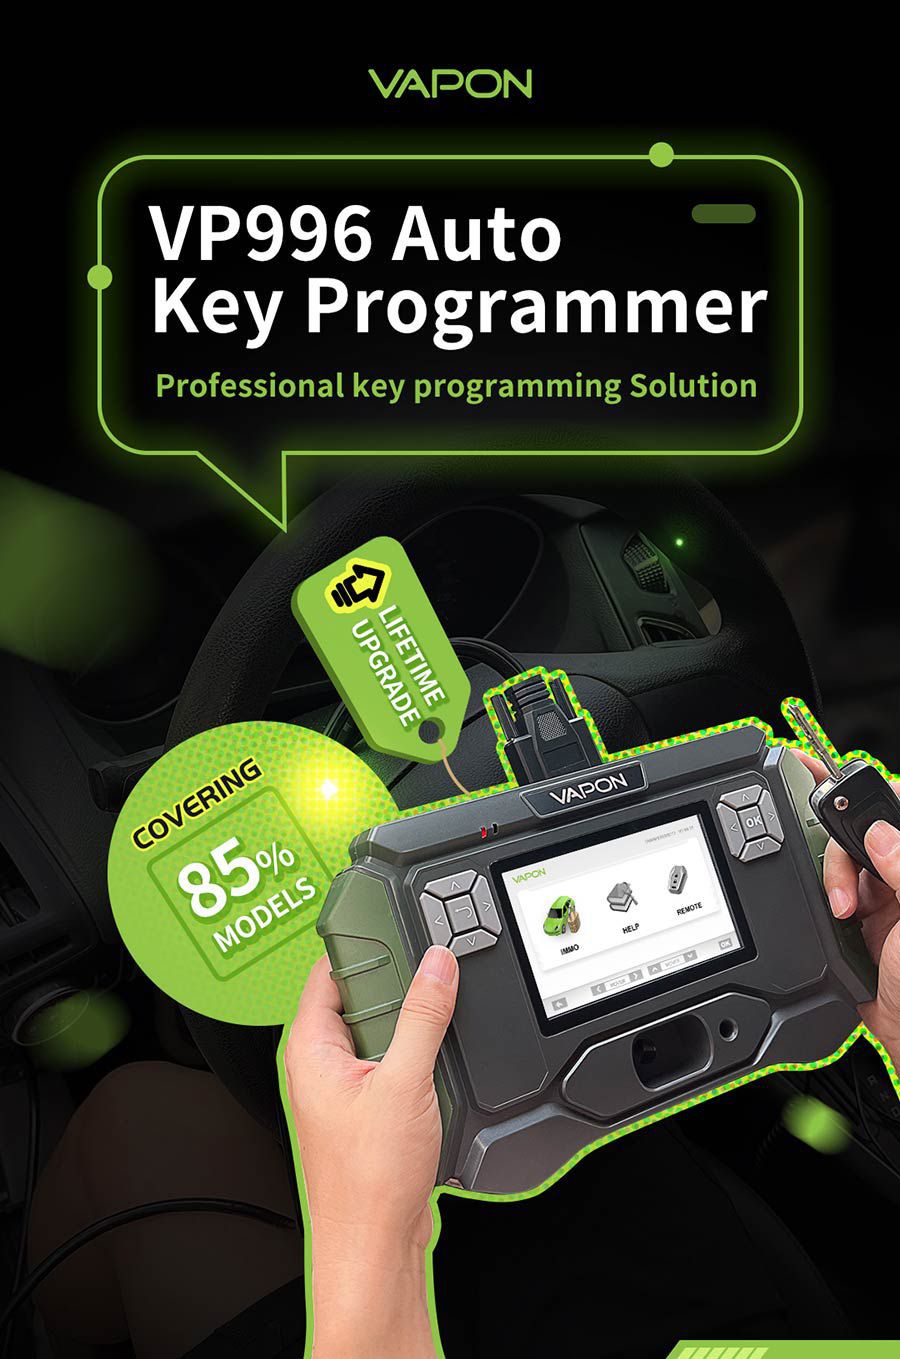 VP996 Auto Key Programmer